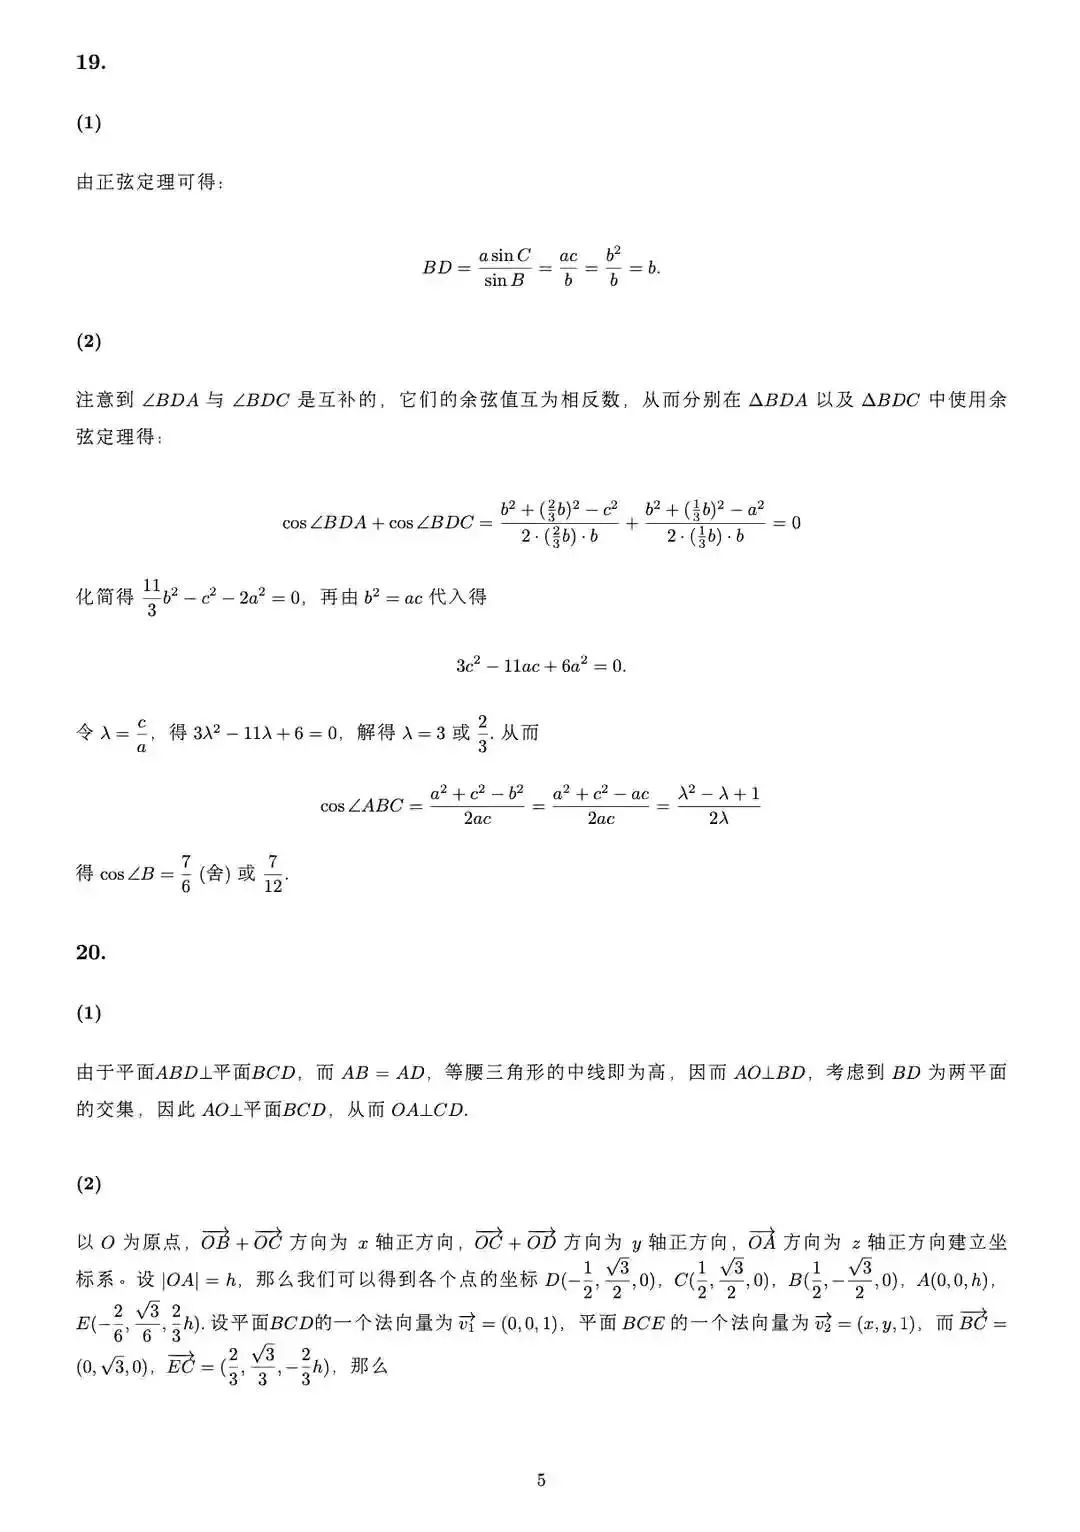 2022年新高考一卷数学真题及答案-会知网www.ihzw.com.cn